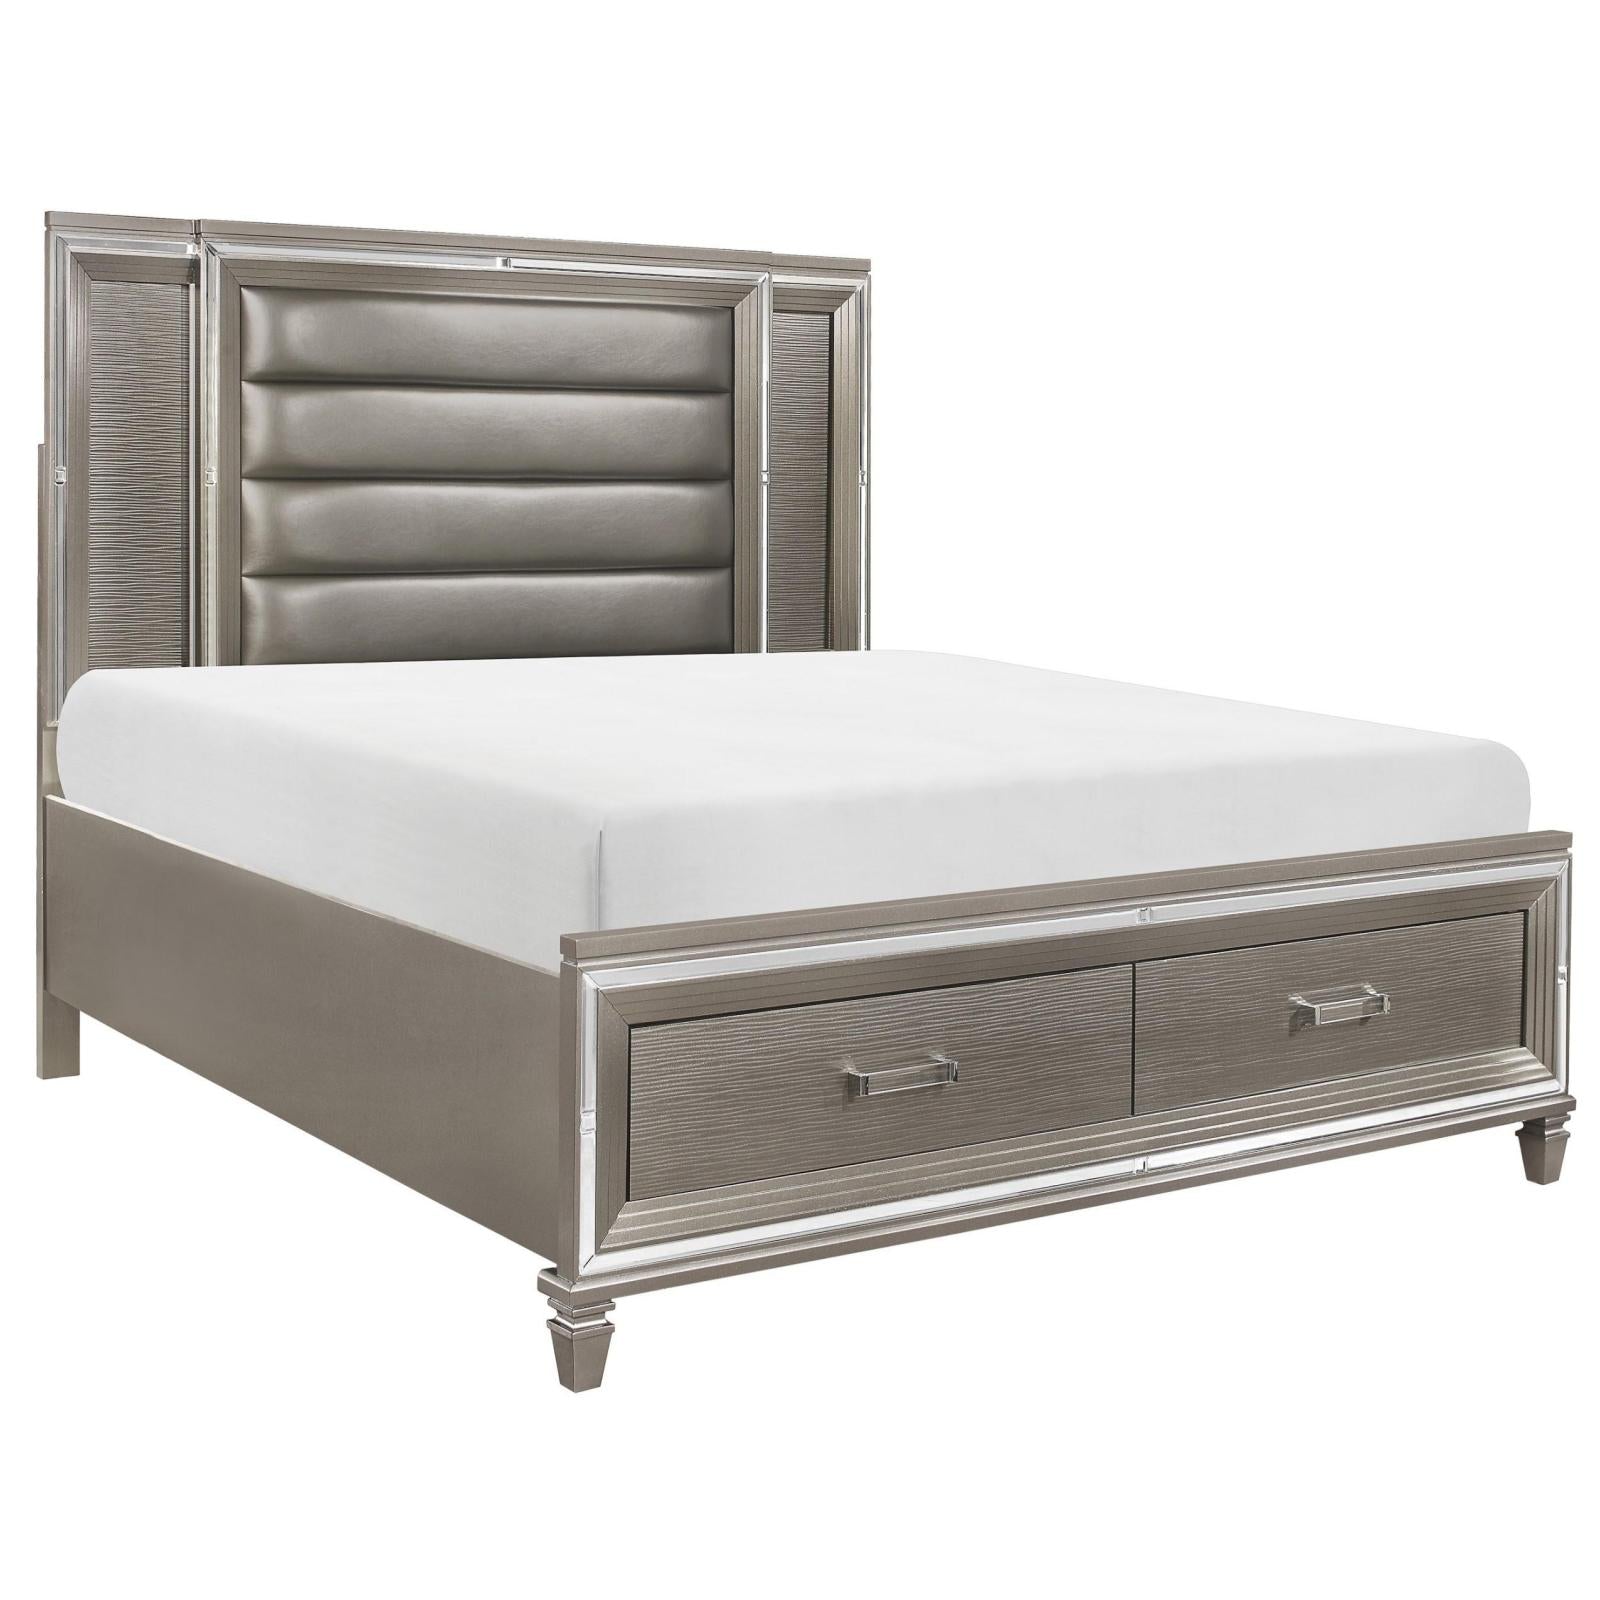 Tasmin Grey Storage Bed, Bed, Homelegance - Adams Furniture